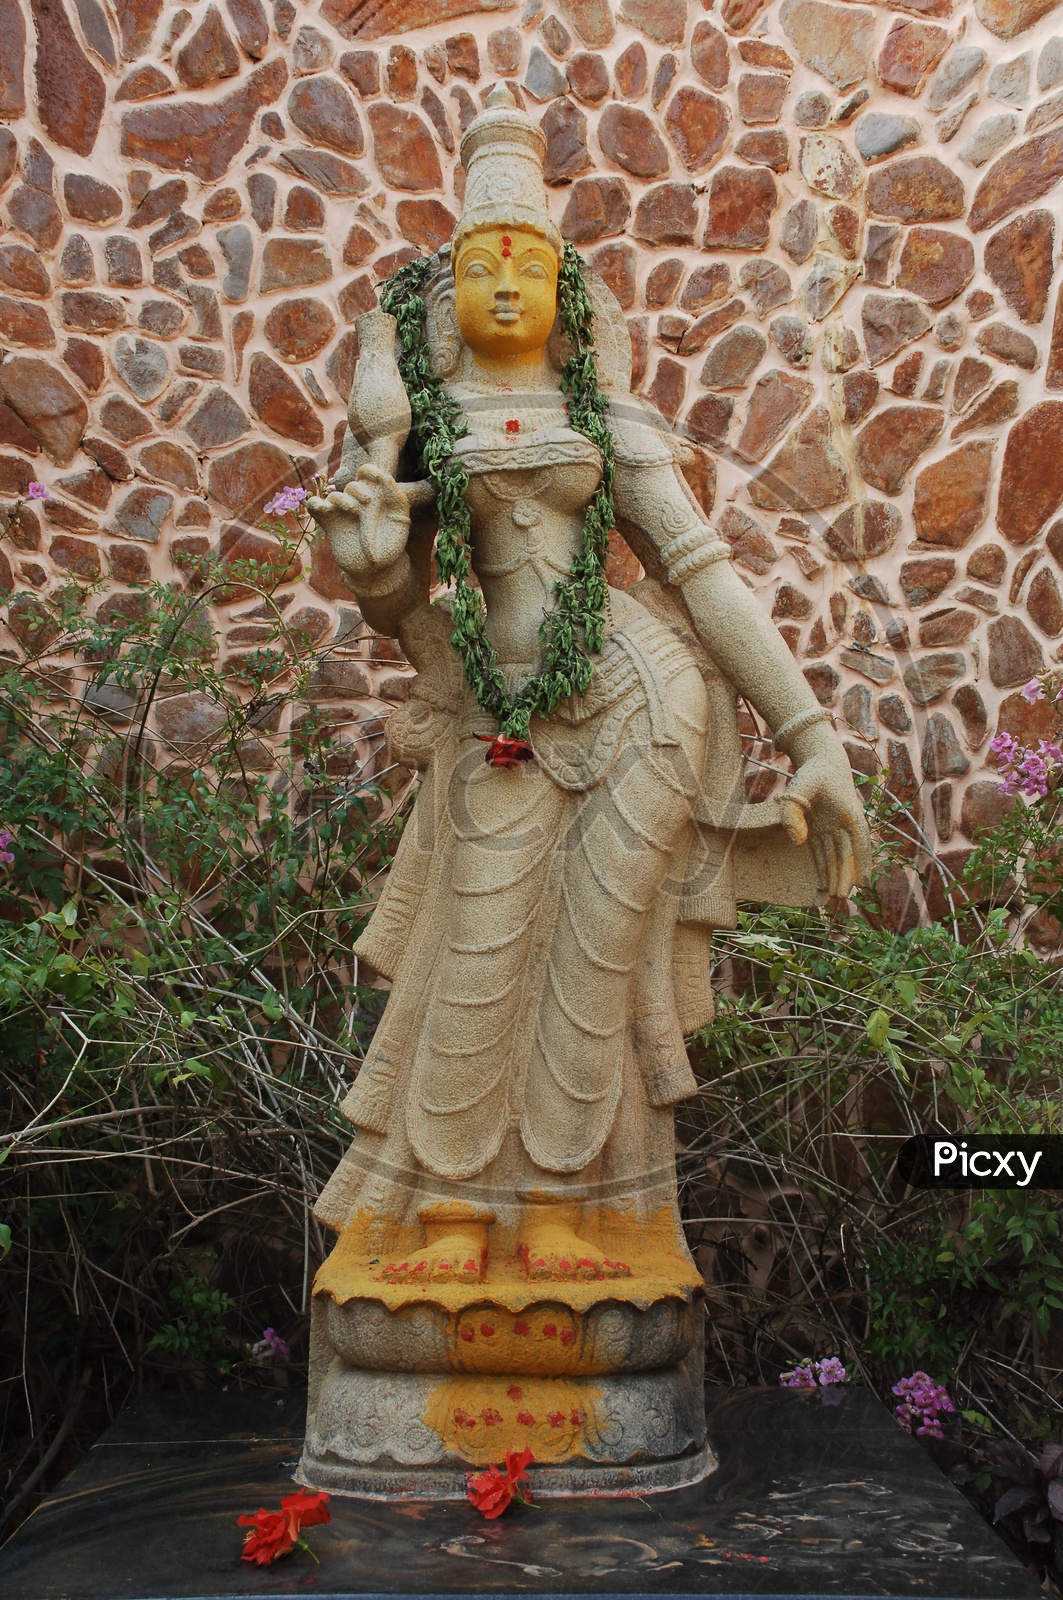 A Hindu Goddess statue